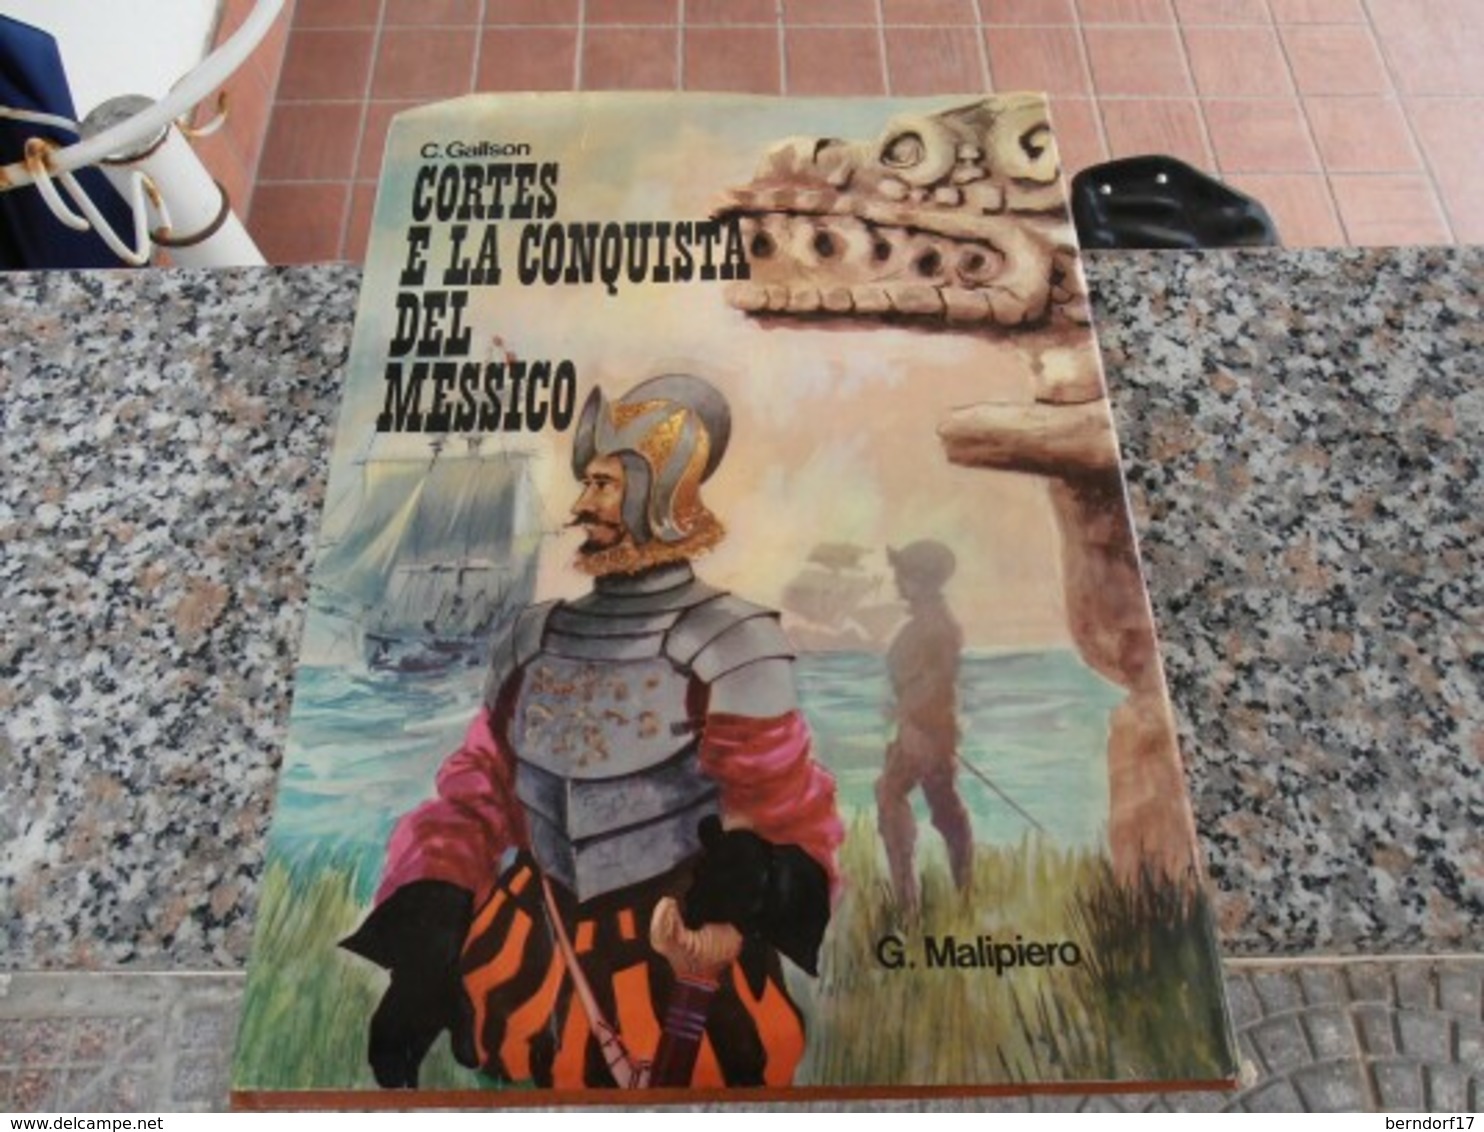 Cortes E La Conquista Del Messico - C. Gallson - Adolescents